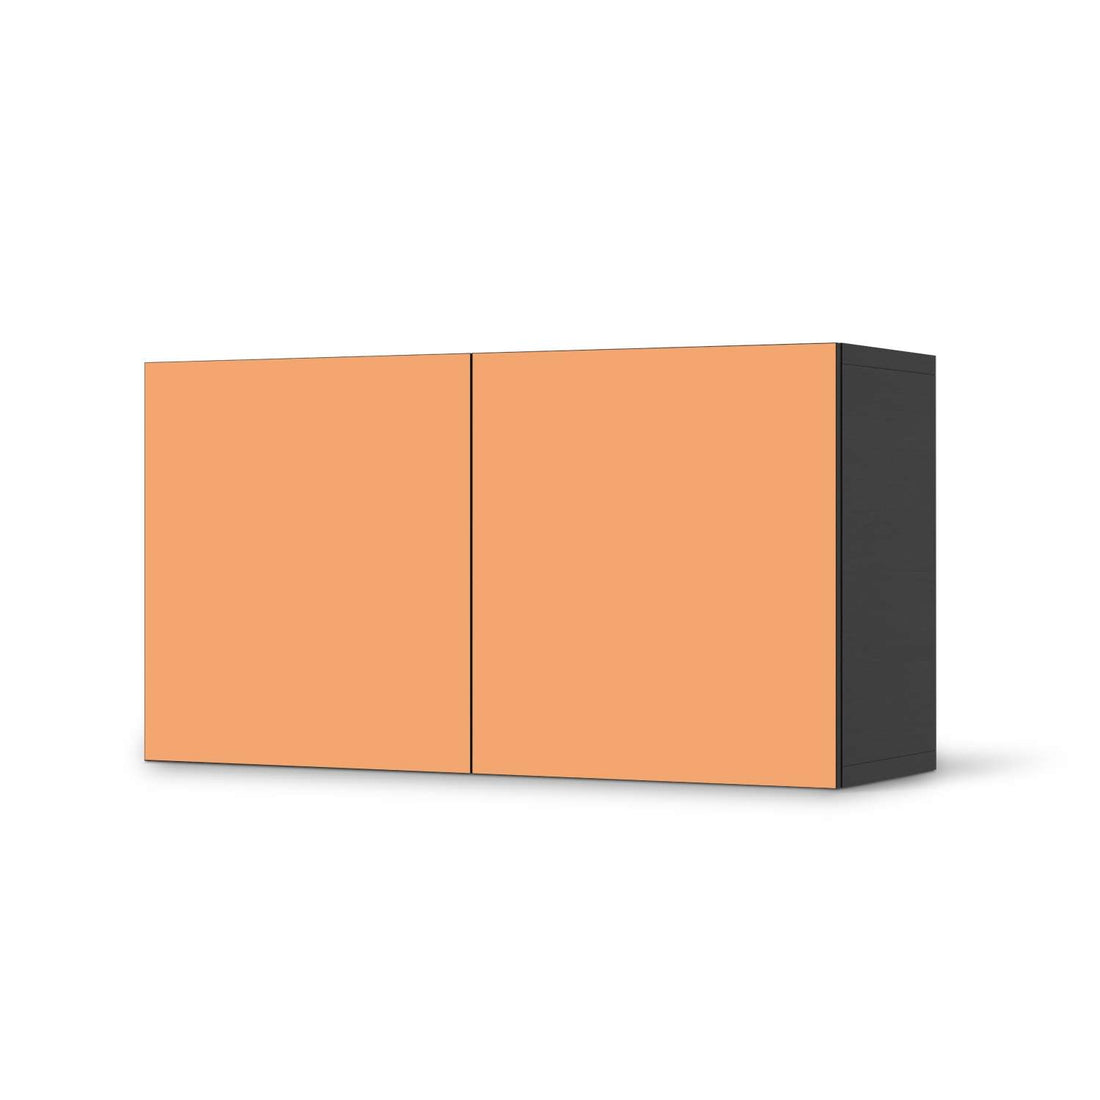 Folie für Möbel Orange Light - IKEA Besta Regal Quer 2 Türen - schwarz